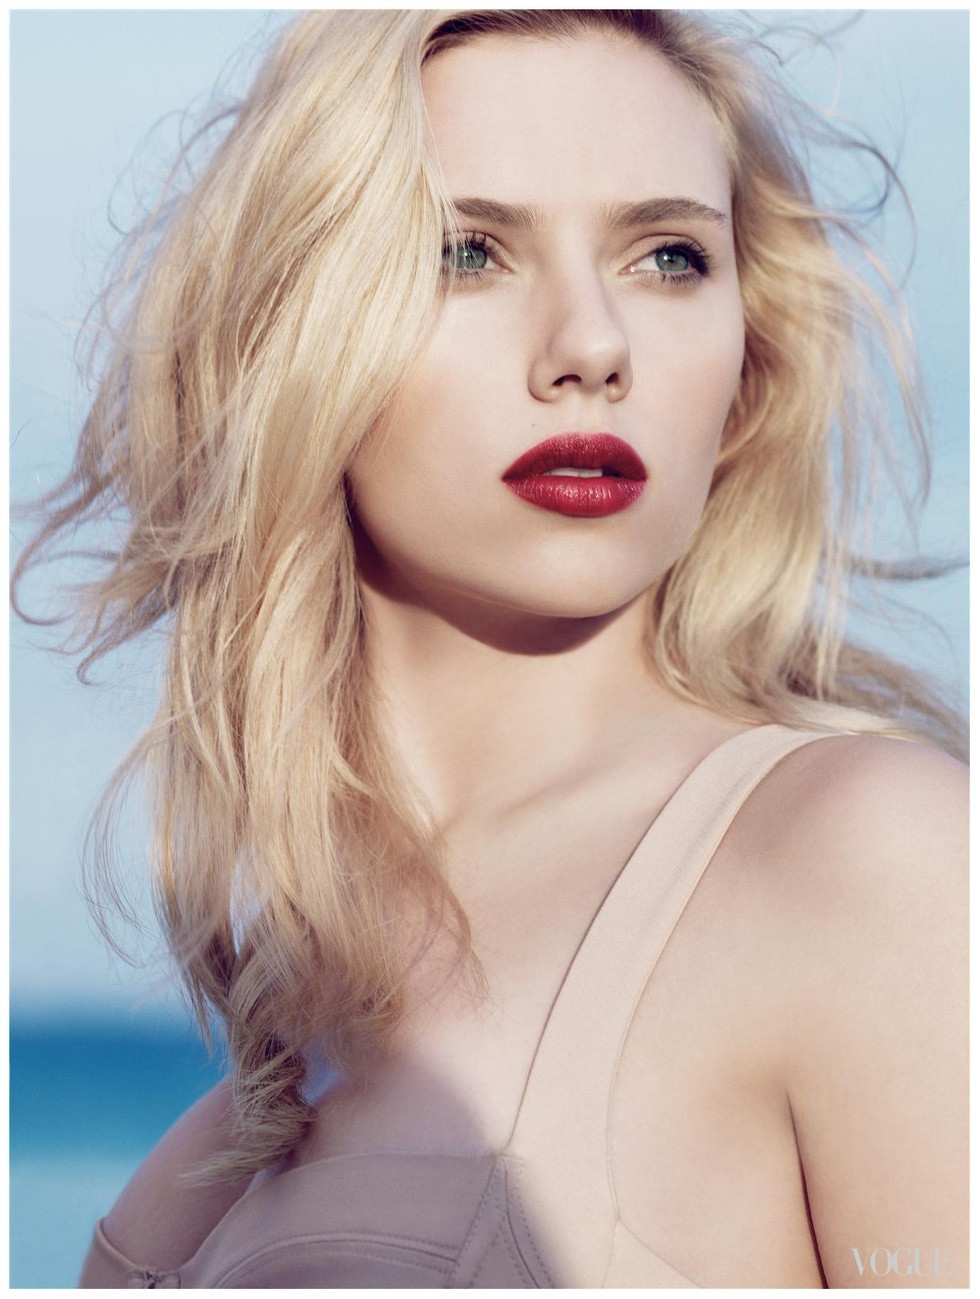 Thân hình sexy như tạc tượng của Scarlett Johansson